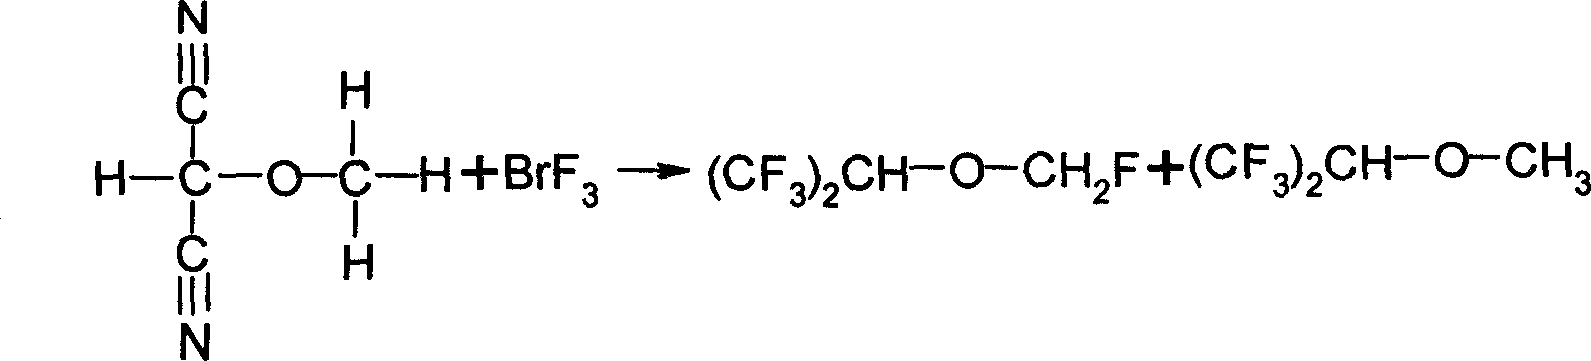 Method of synthesizing fluoromethyl-1,1,1,3,3,3-hexafluoroisopropyl ether